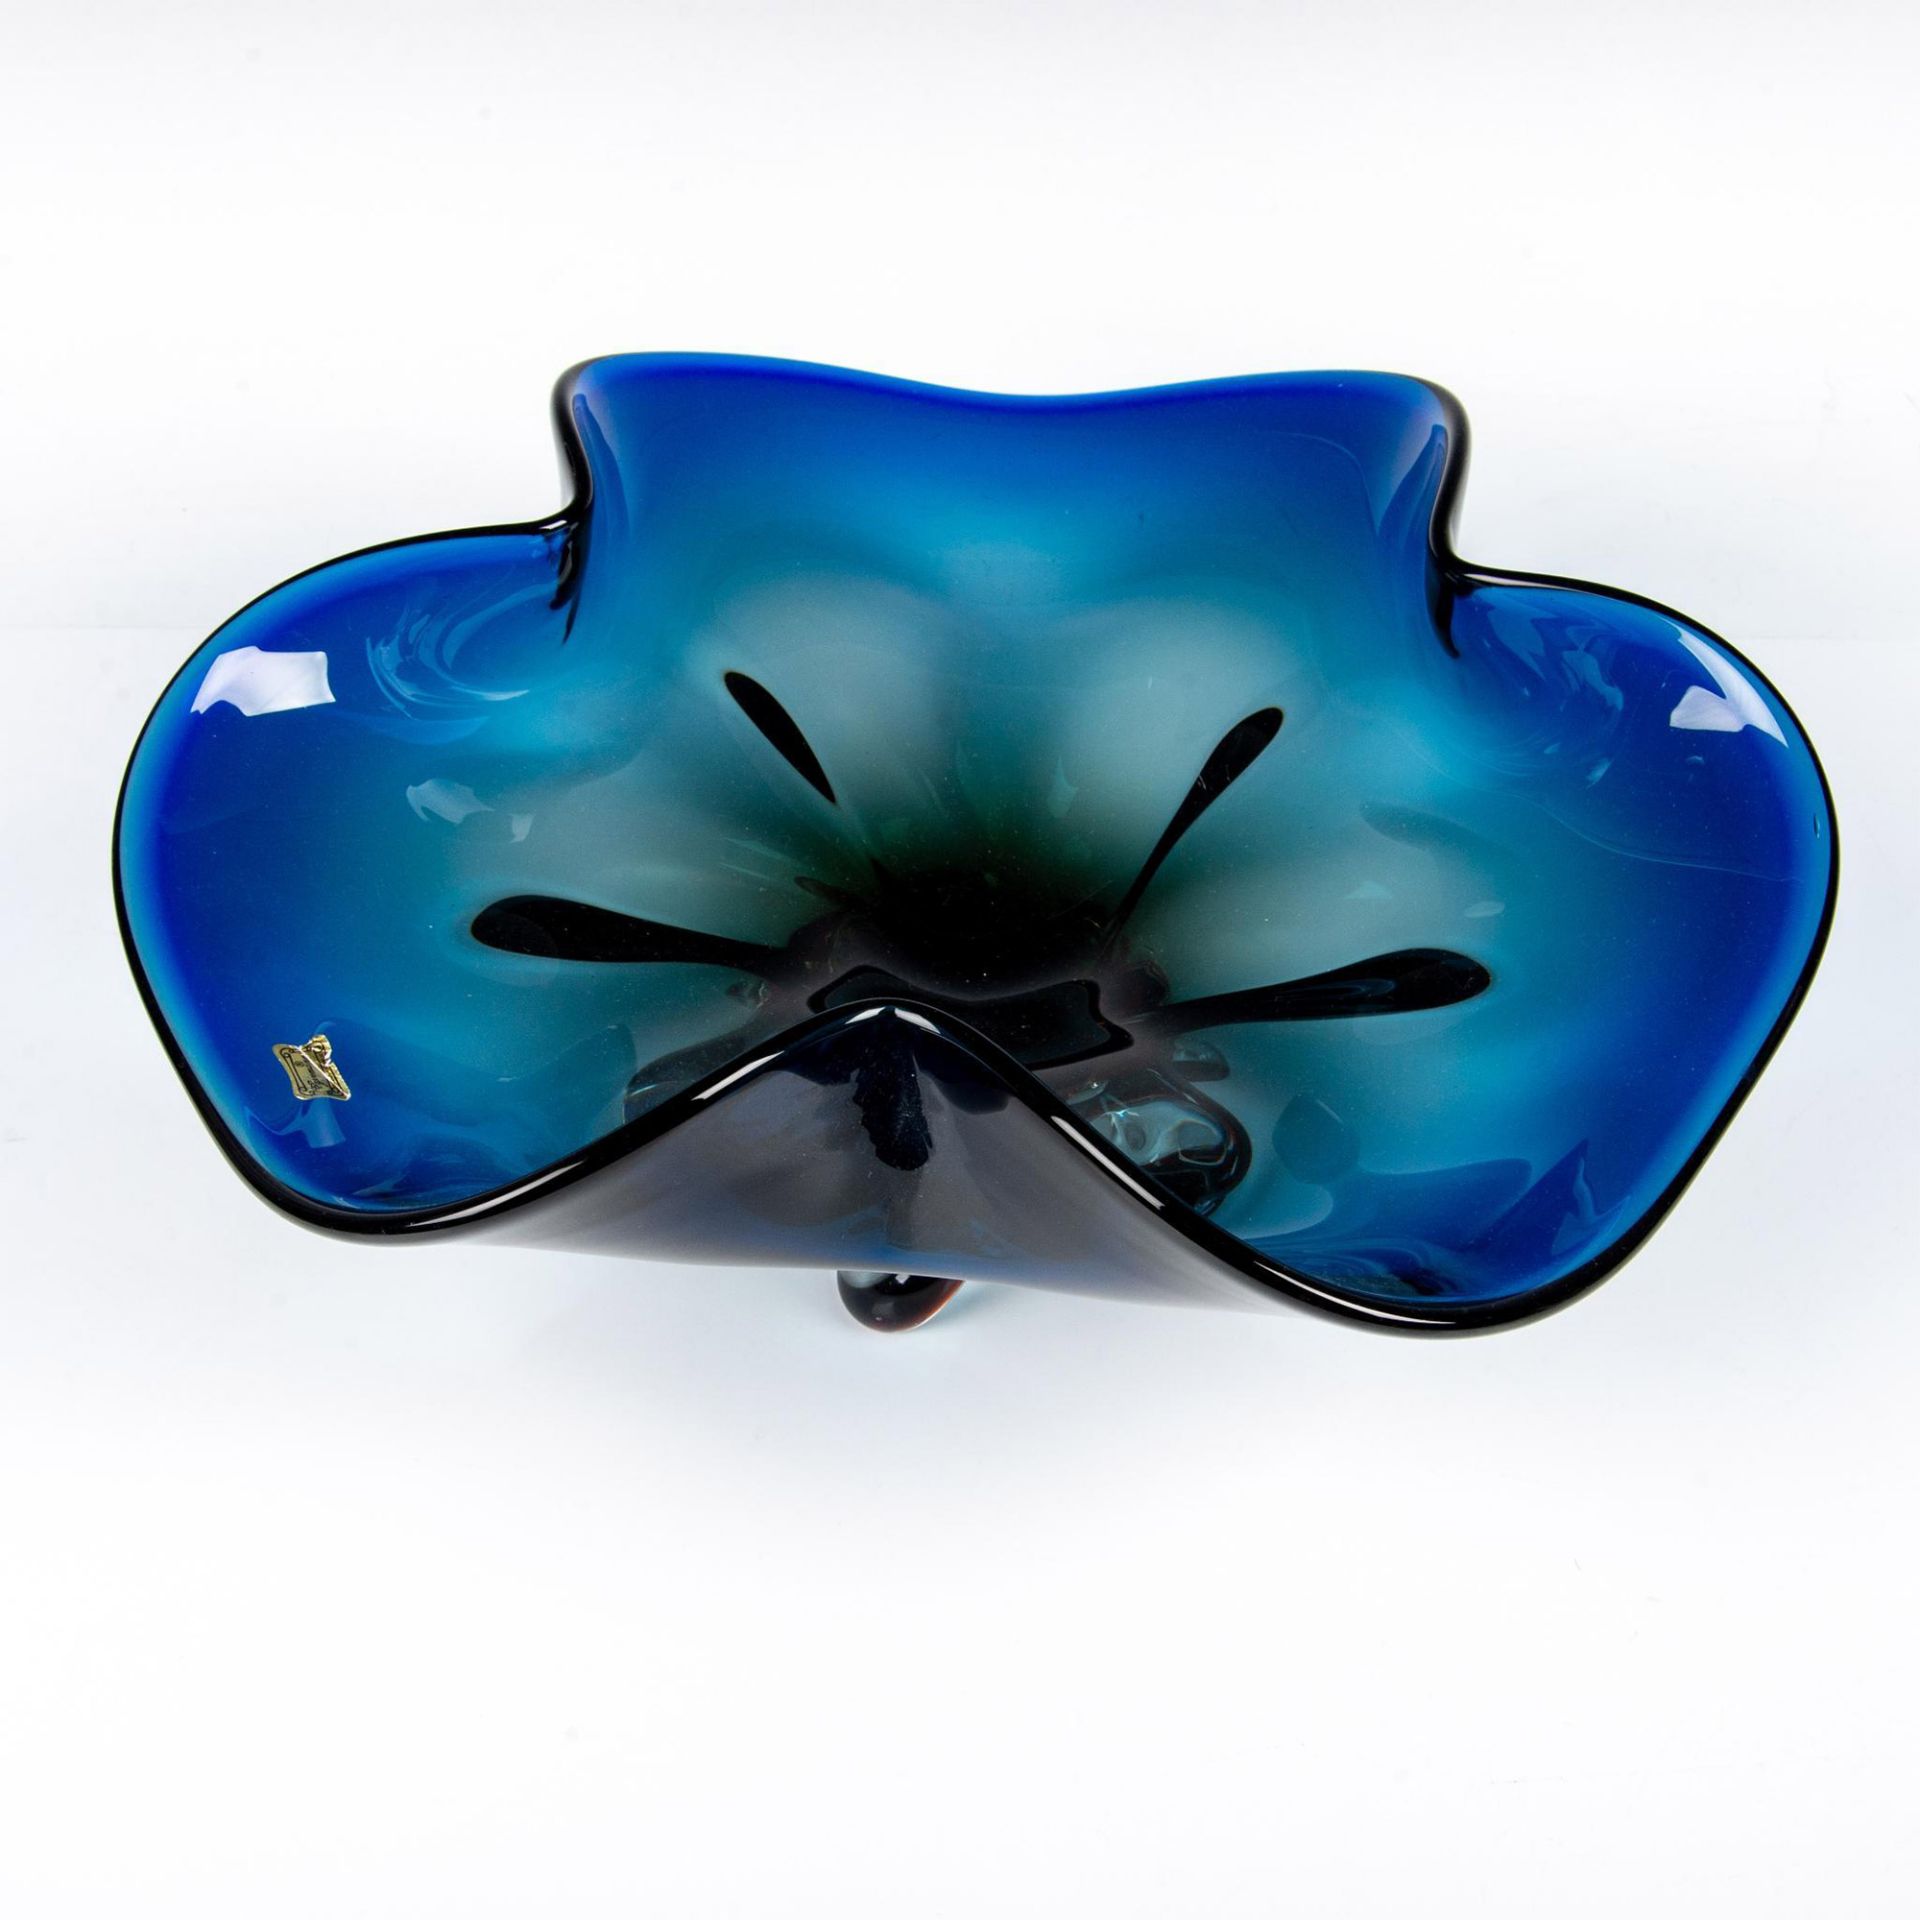 Egermann Czech Republic Art Glass Bowl - Image 2 of 5